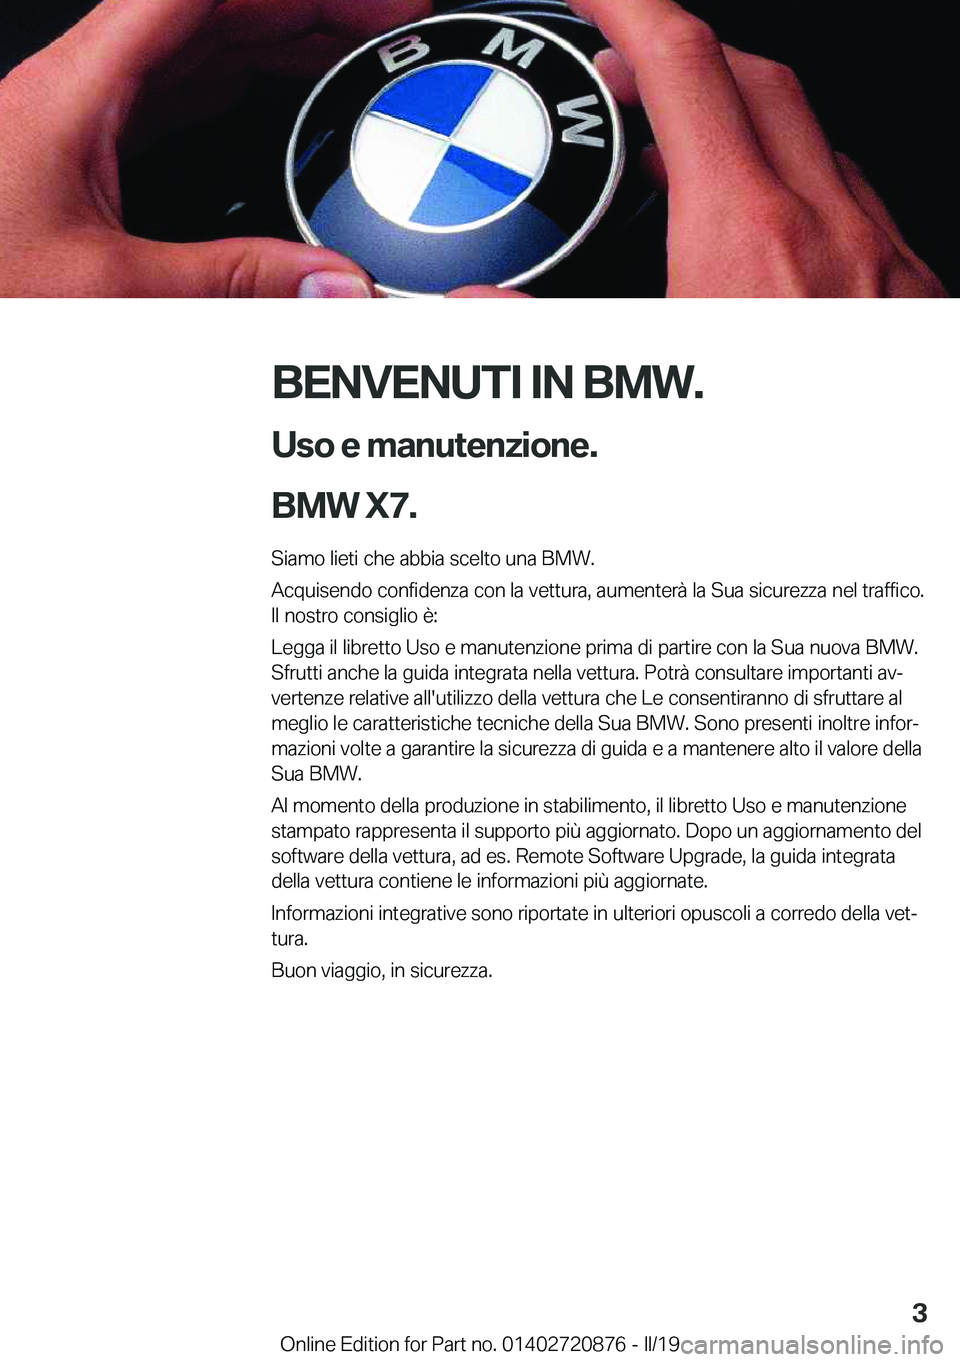 BMW X7 2019  Libretti Di Uso E manutenzione (in Italian) �B�E�N�V�E�N�U�T�I��I�N��B�M�W�.�U�s�o��e��m�a�n�u�t�e�n�z�i�o�n�e�.
�B�M�W��X�7�.
�S�i�a�m�o��l�i�e�t�i��c�h�e��a�b�b�i�a��s�c�e�l�t�o��u�n�a��B�M�W�.
�A�c�q�u�i�s�e�n�d�o��c�o�n�f�i�d�e�